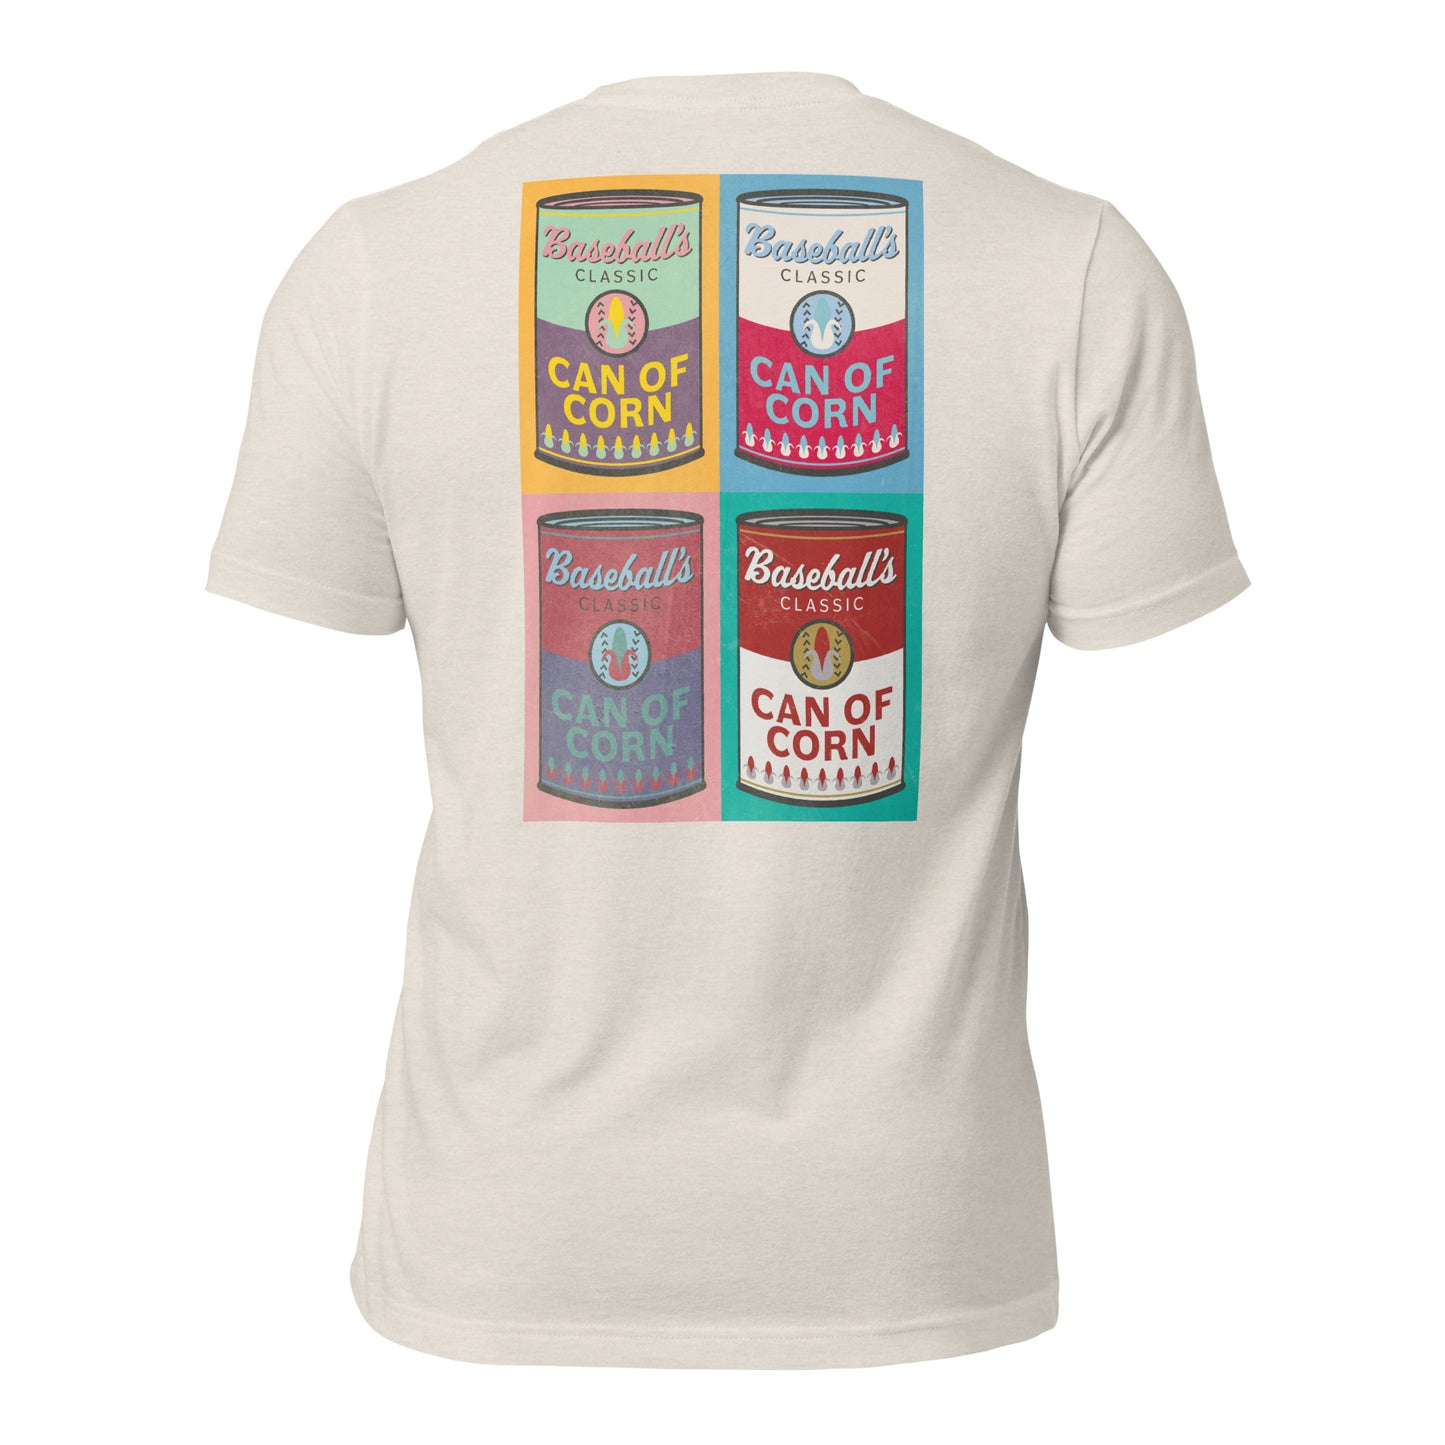 Can of Corn Pop Art Unisex T-shirt pop art andy warhol mlb outfield tee shirt